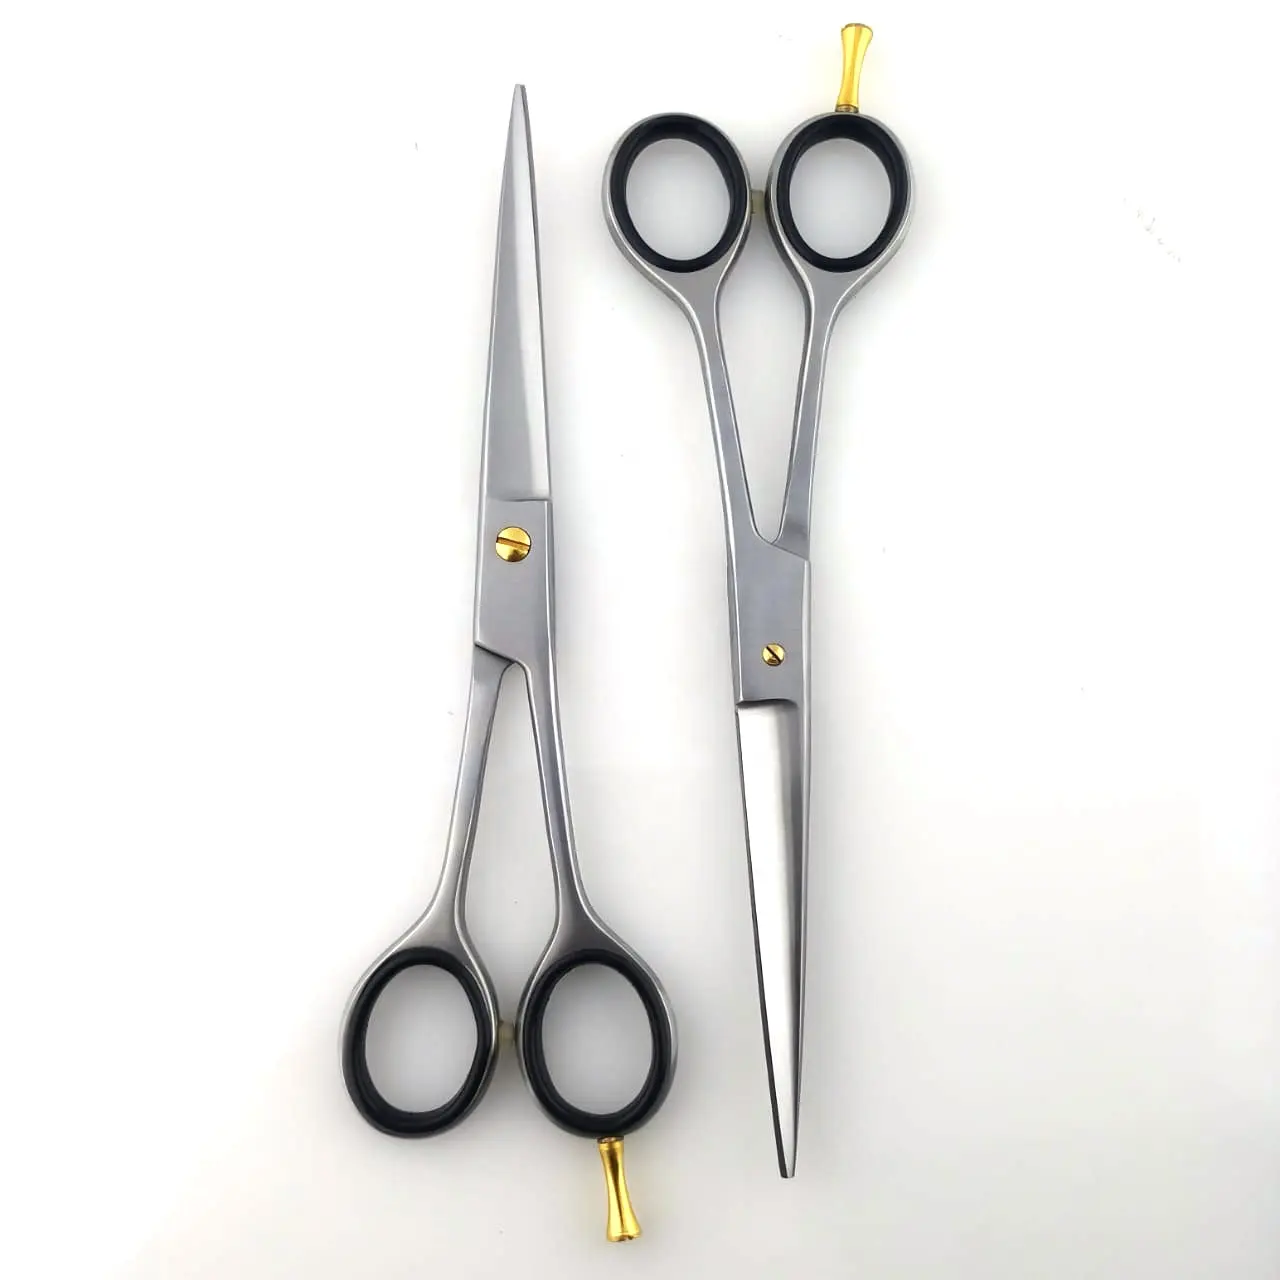 Professional Barber Scissors Stainless Steel Hair Scissor Thinning Hairdressing Shears for Hairdressers Barbers razor sharp edge